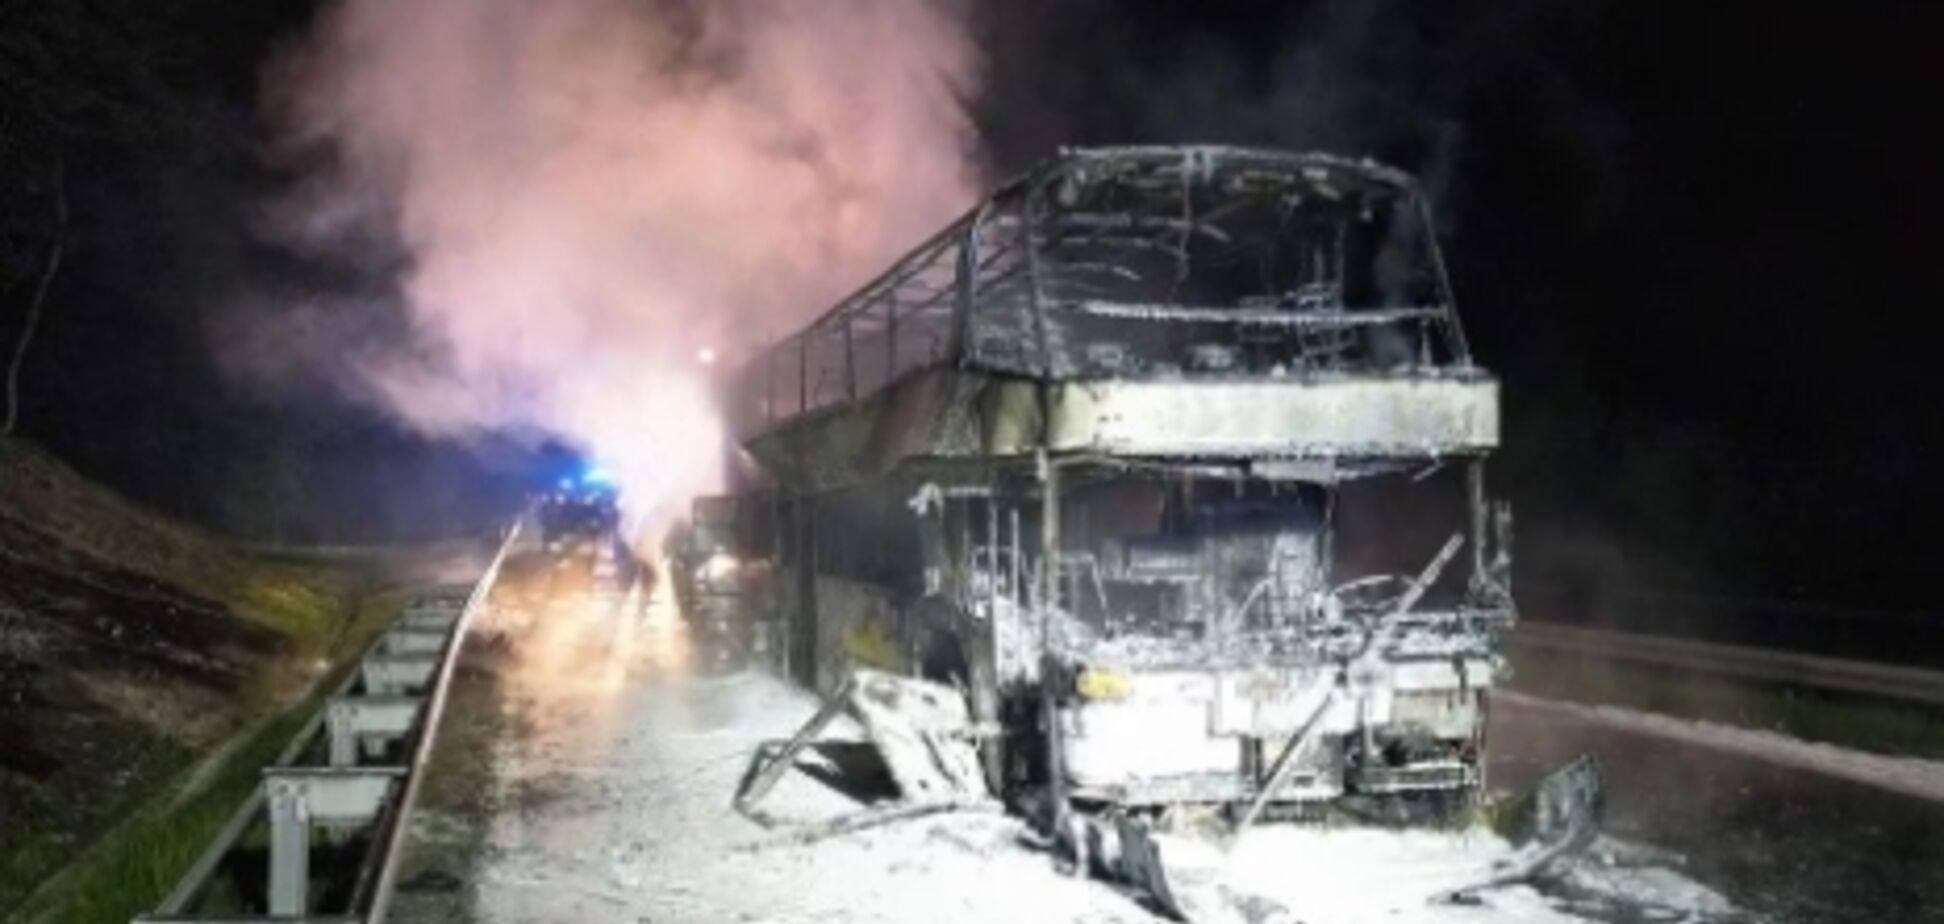 Пропалил дыру в асфальте: пассажирский автобус из Киева полностью сгорел в Польше 